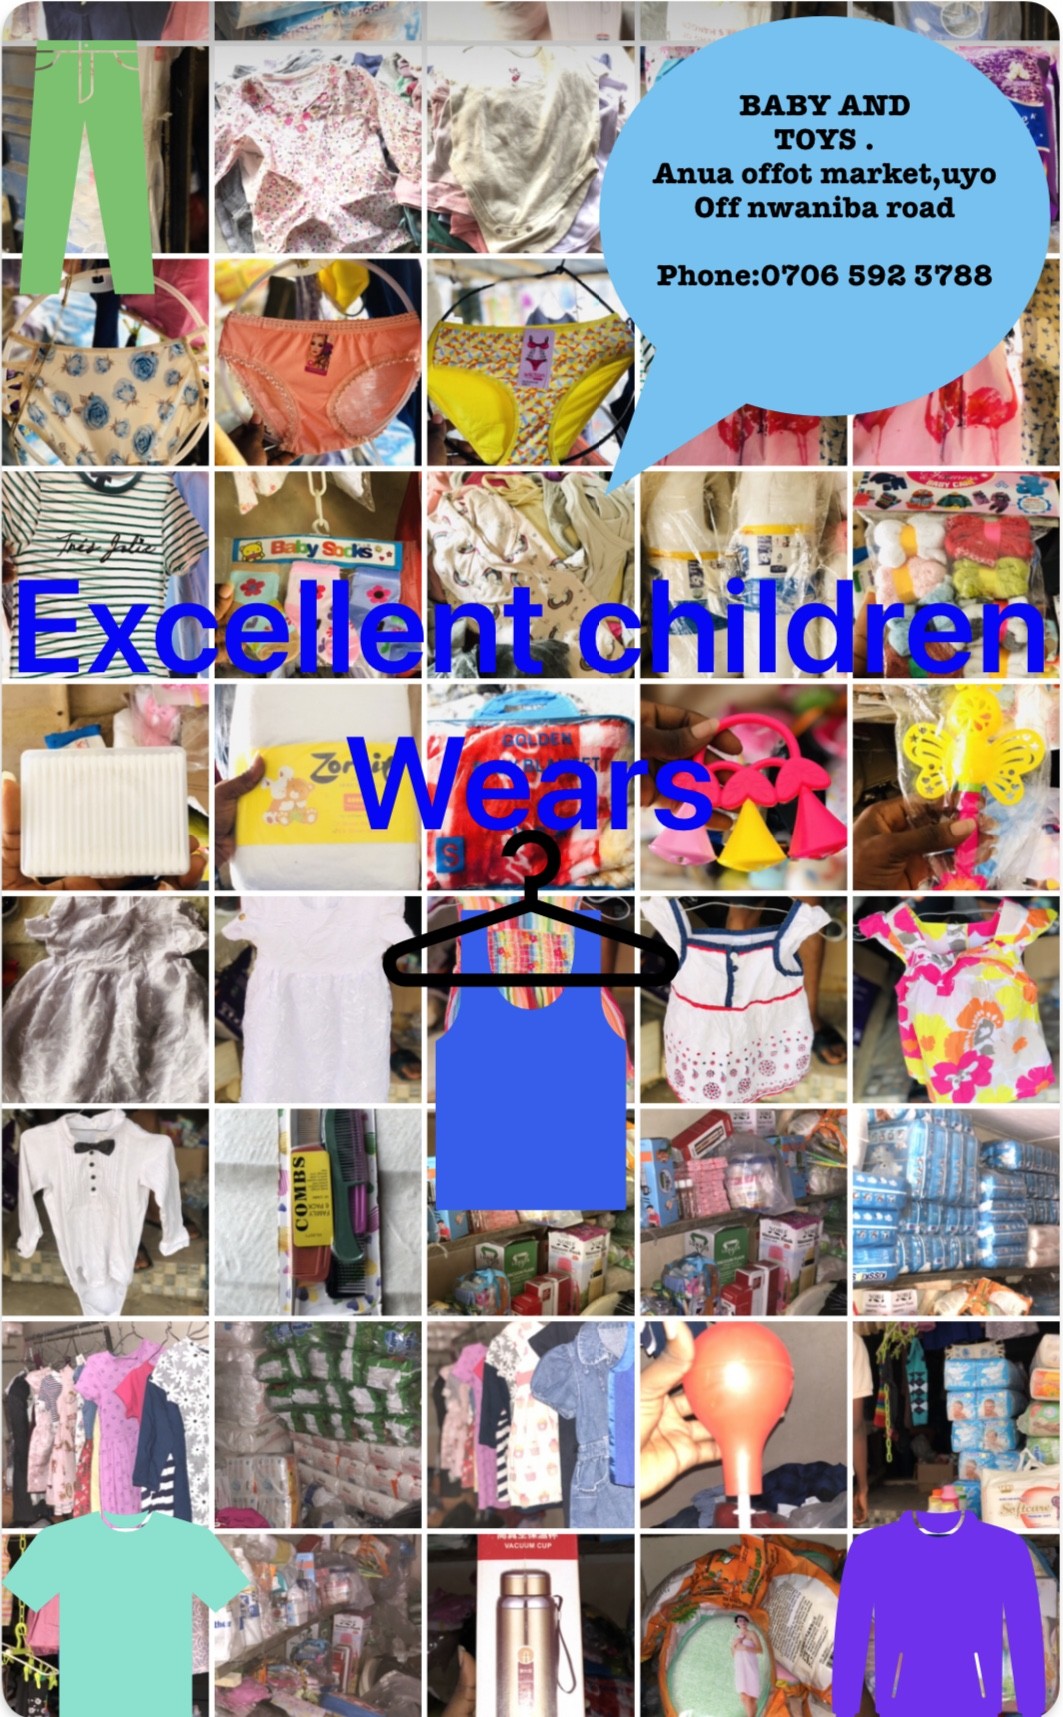 Excellent children wears